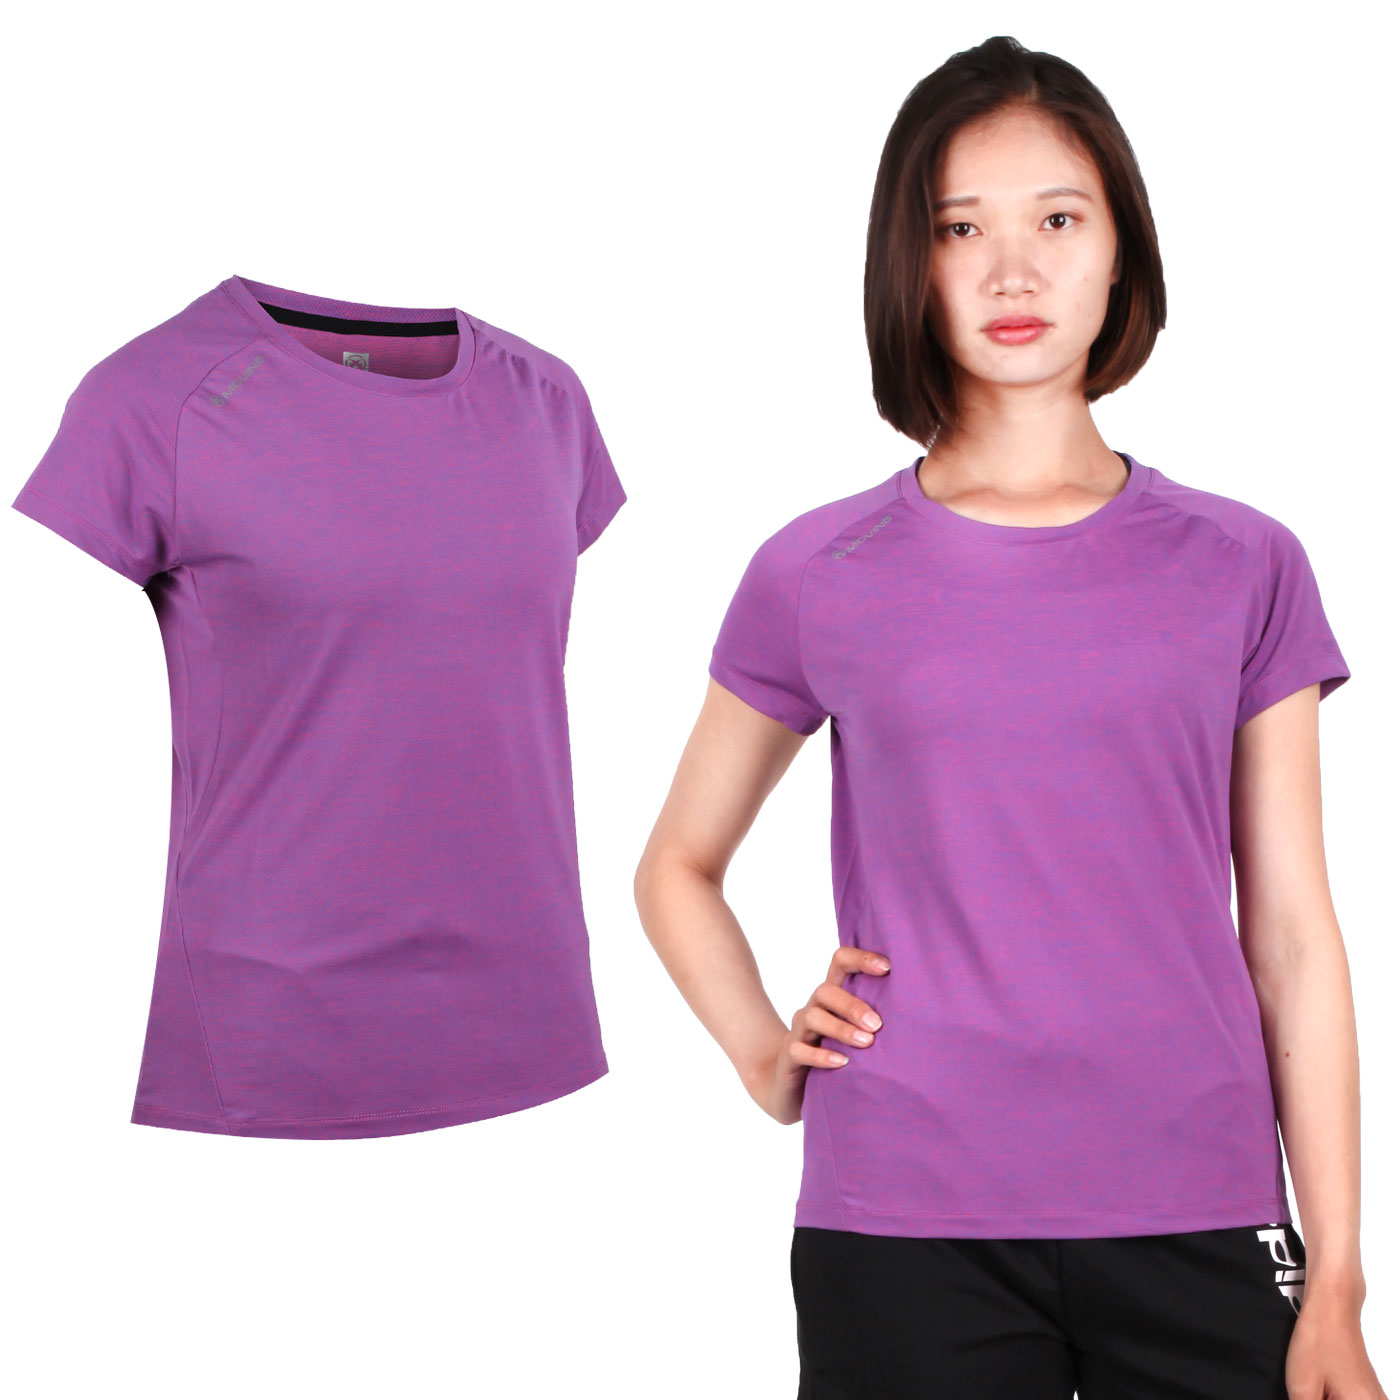 FIRESTAR 女款彈性短袖圓領T恤 DL963-18 - 紫粉